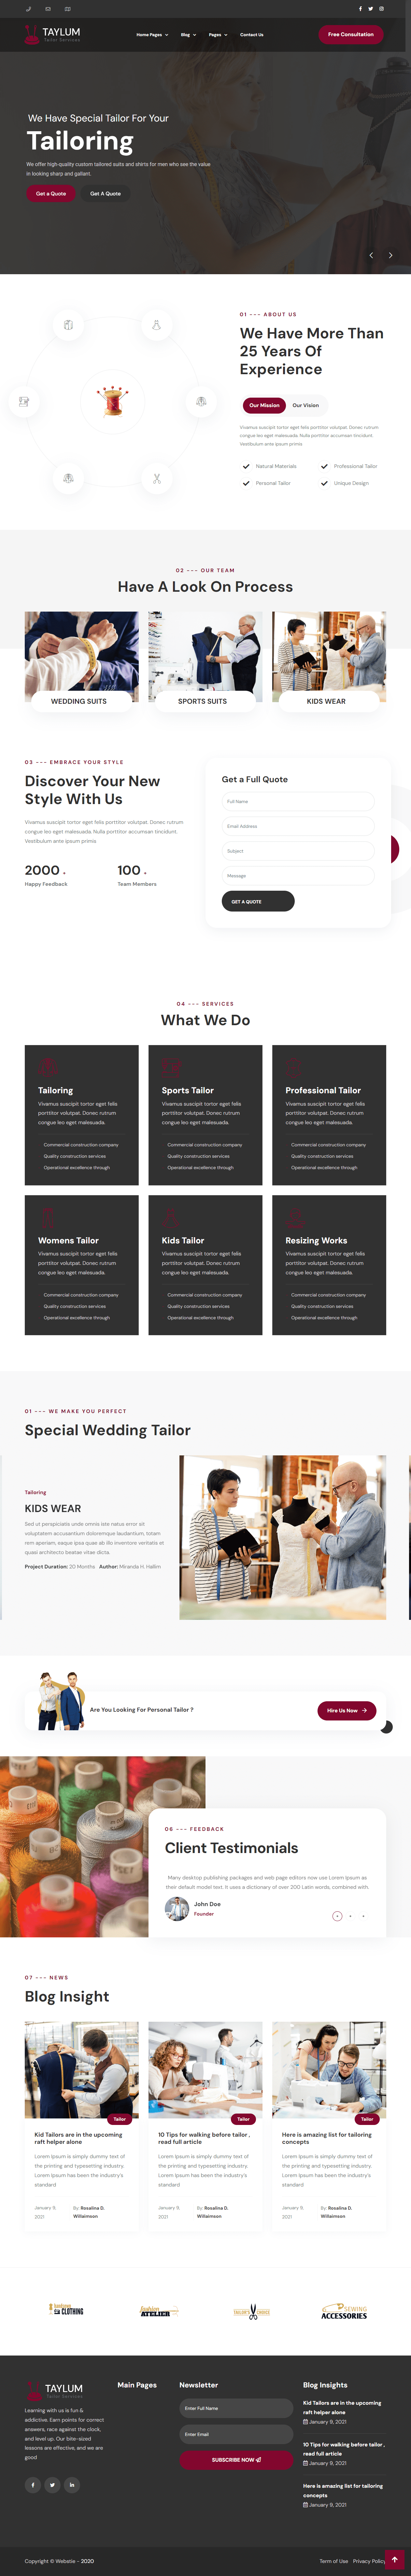 Tailors-website-template-1